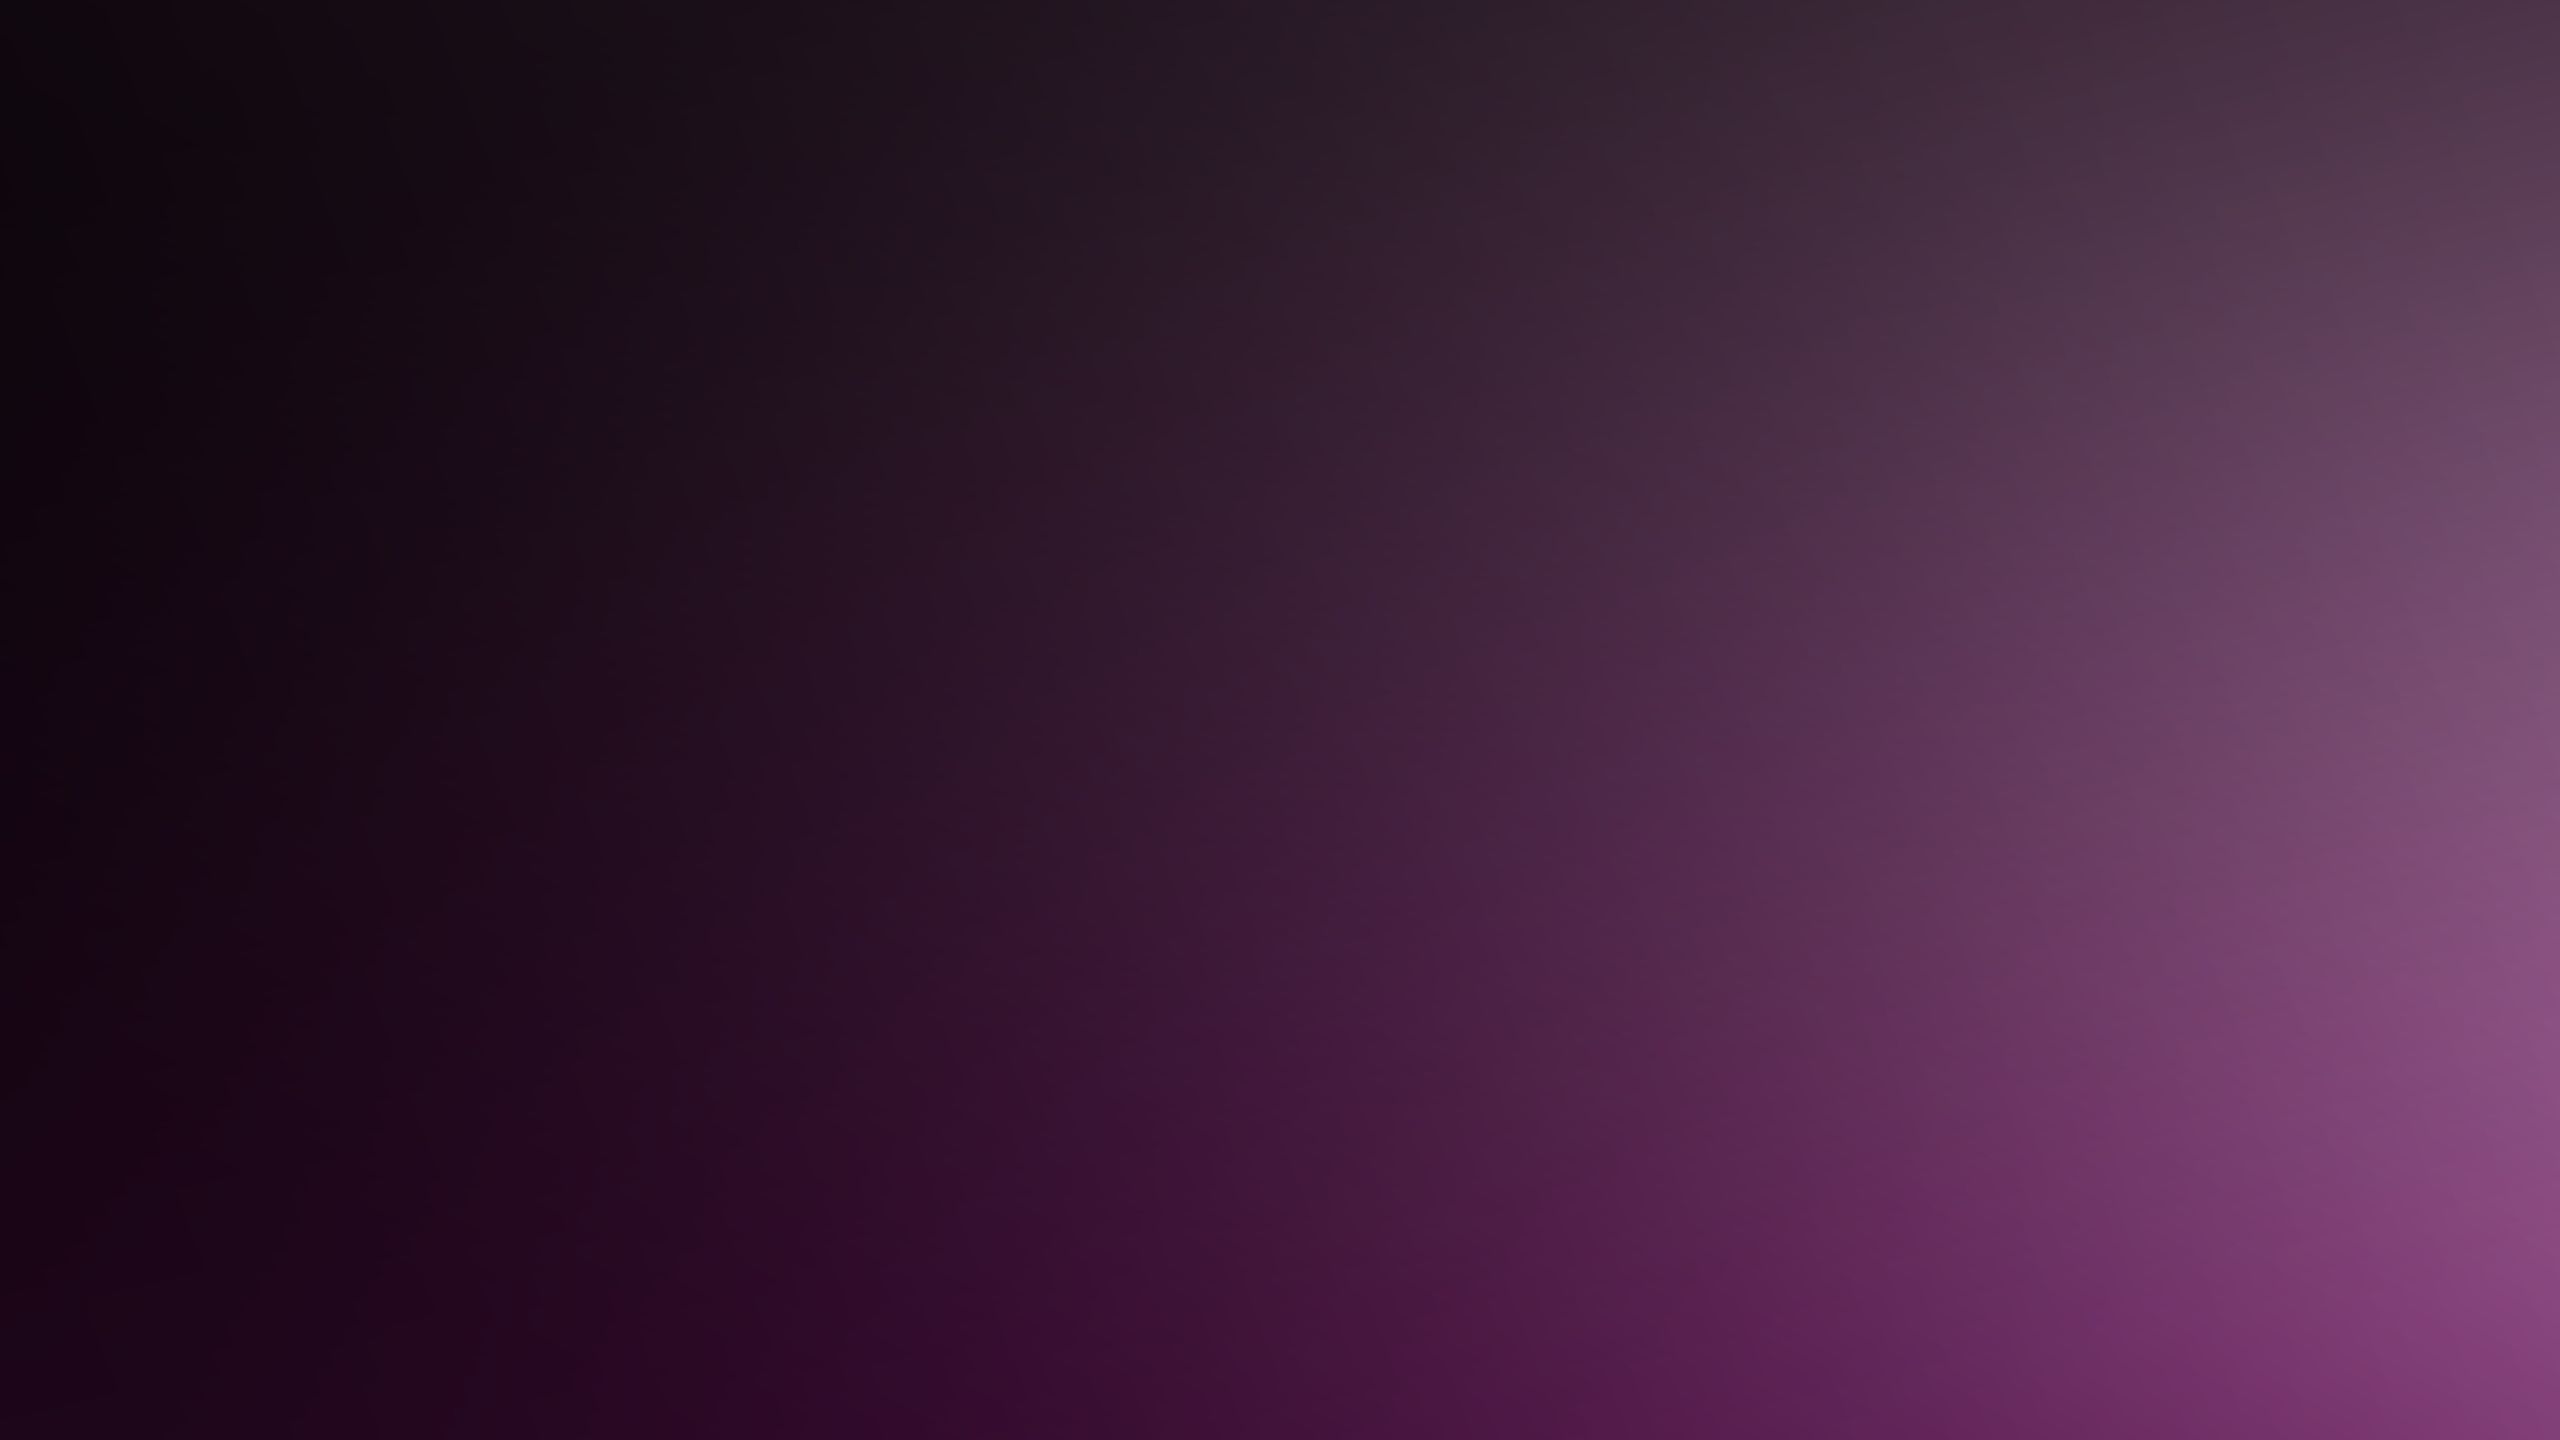 Download Wallpaper 2560x1440 Purple, Dark, Shadow, Color Mac iMac ...